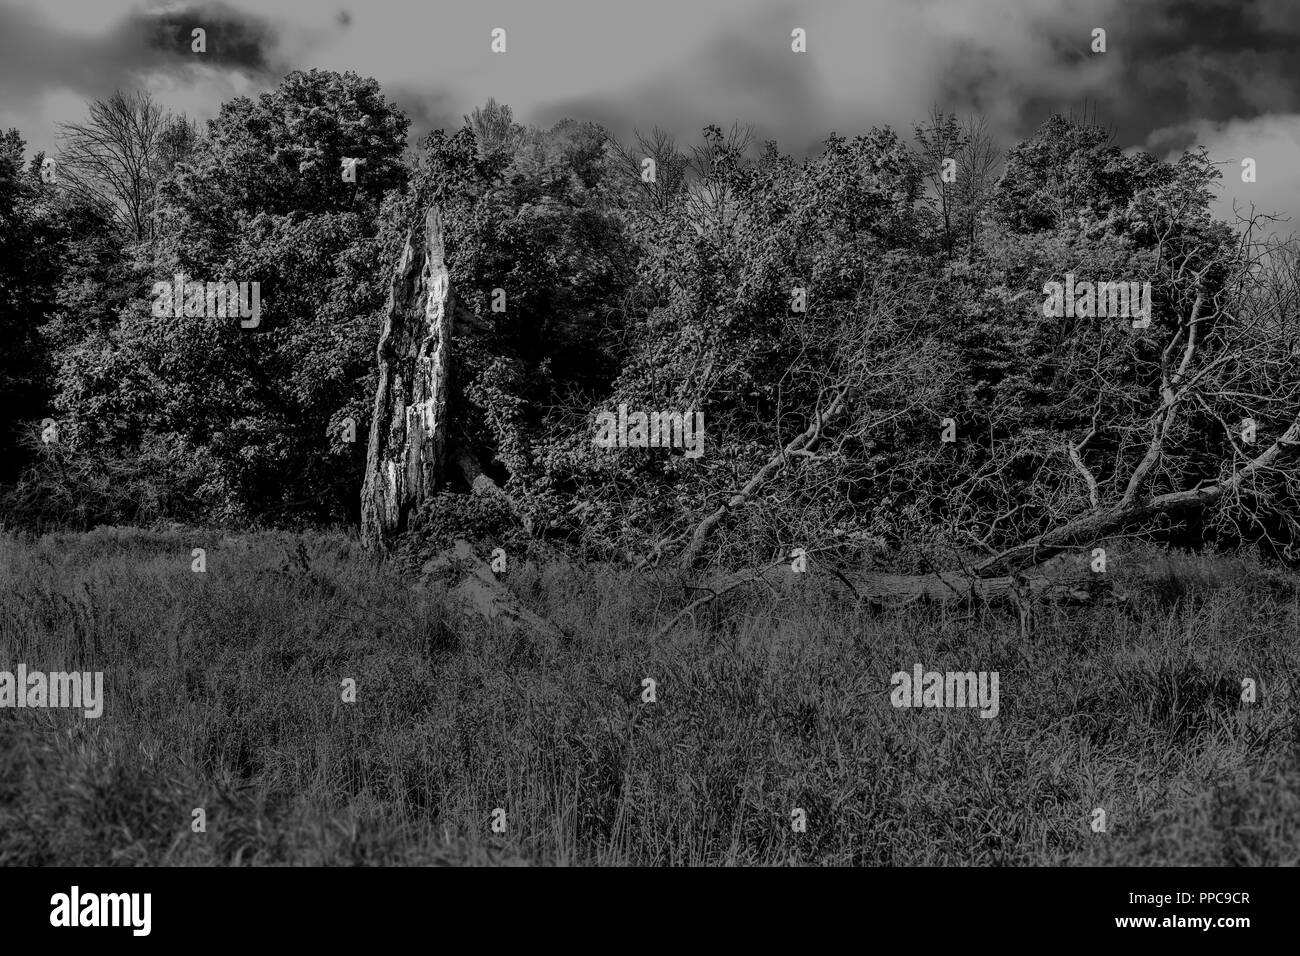 Immagini in scala di grigi di alberi rotti da tempeste o tornado gravi nel Sud dell'Ontario. Orizzontale in bianco e nero. Foto Stock